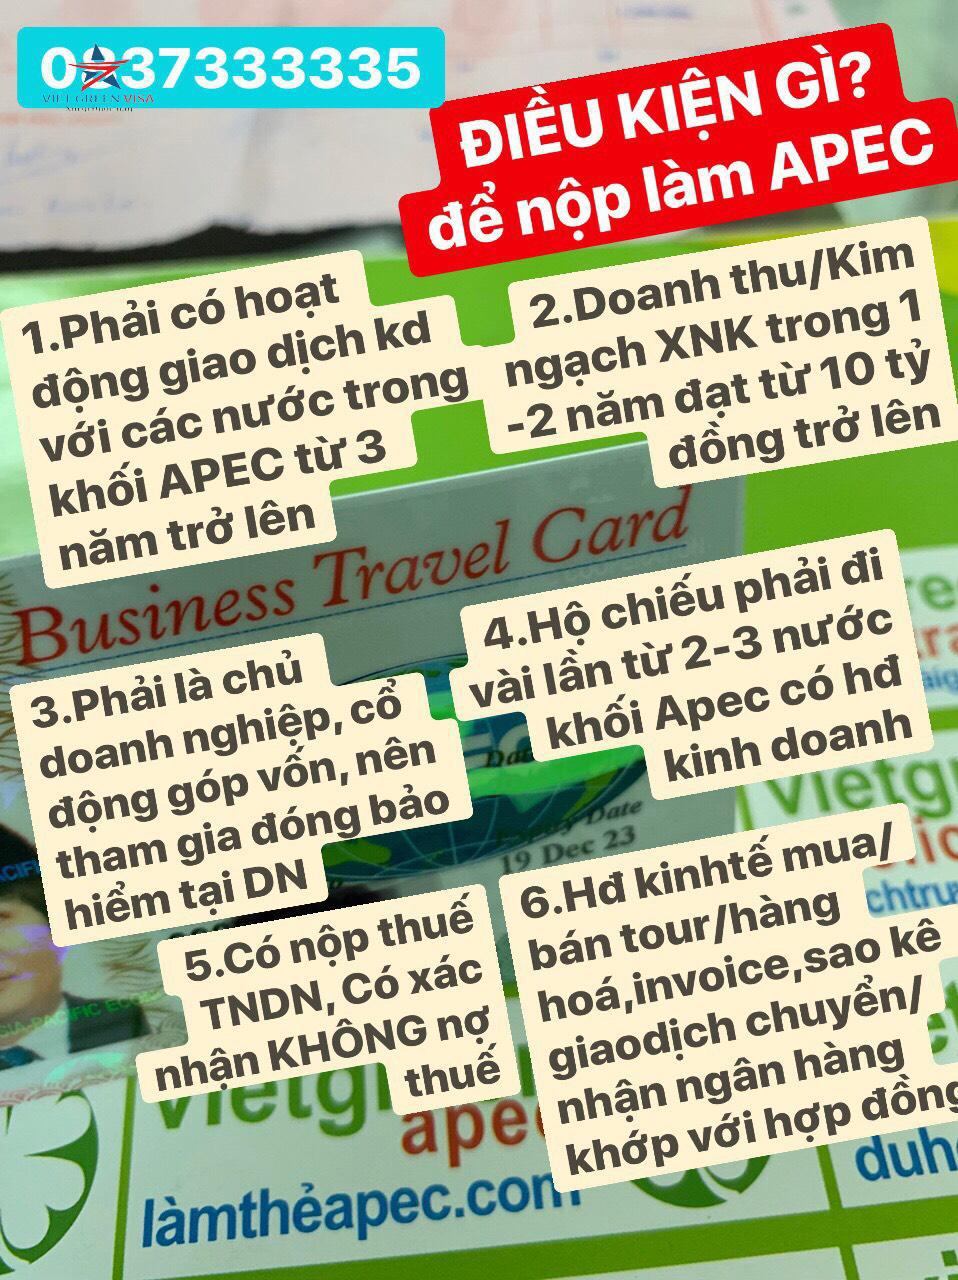 Dịch vụ làm thẻ Apec tại Nghệ An, tư vấn thẻ Apec, thẻ apec, Nghệ An, Viet Green Visa, Làm thẻ Apec Nghệ An  uy tín